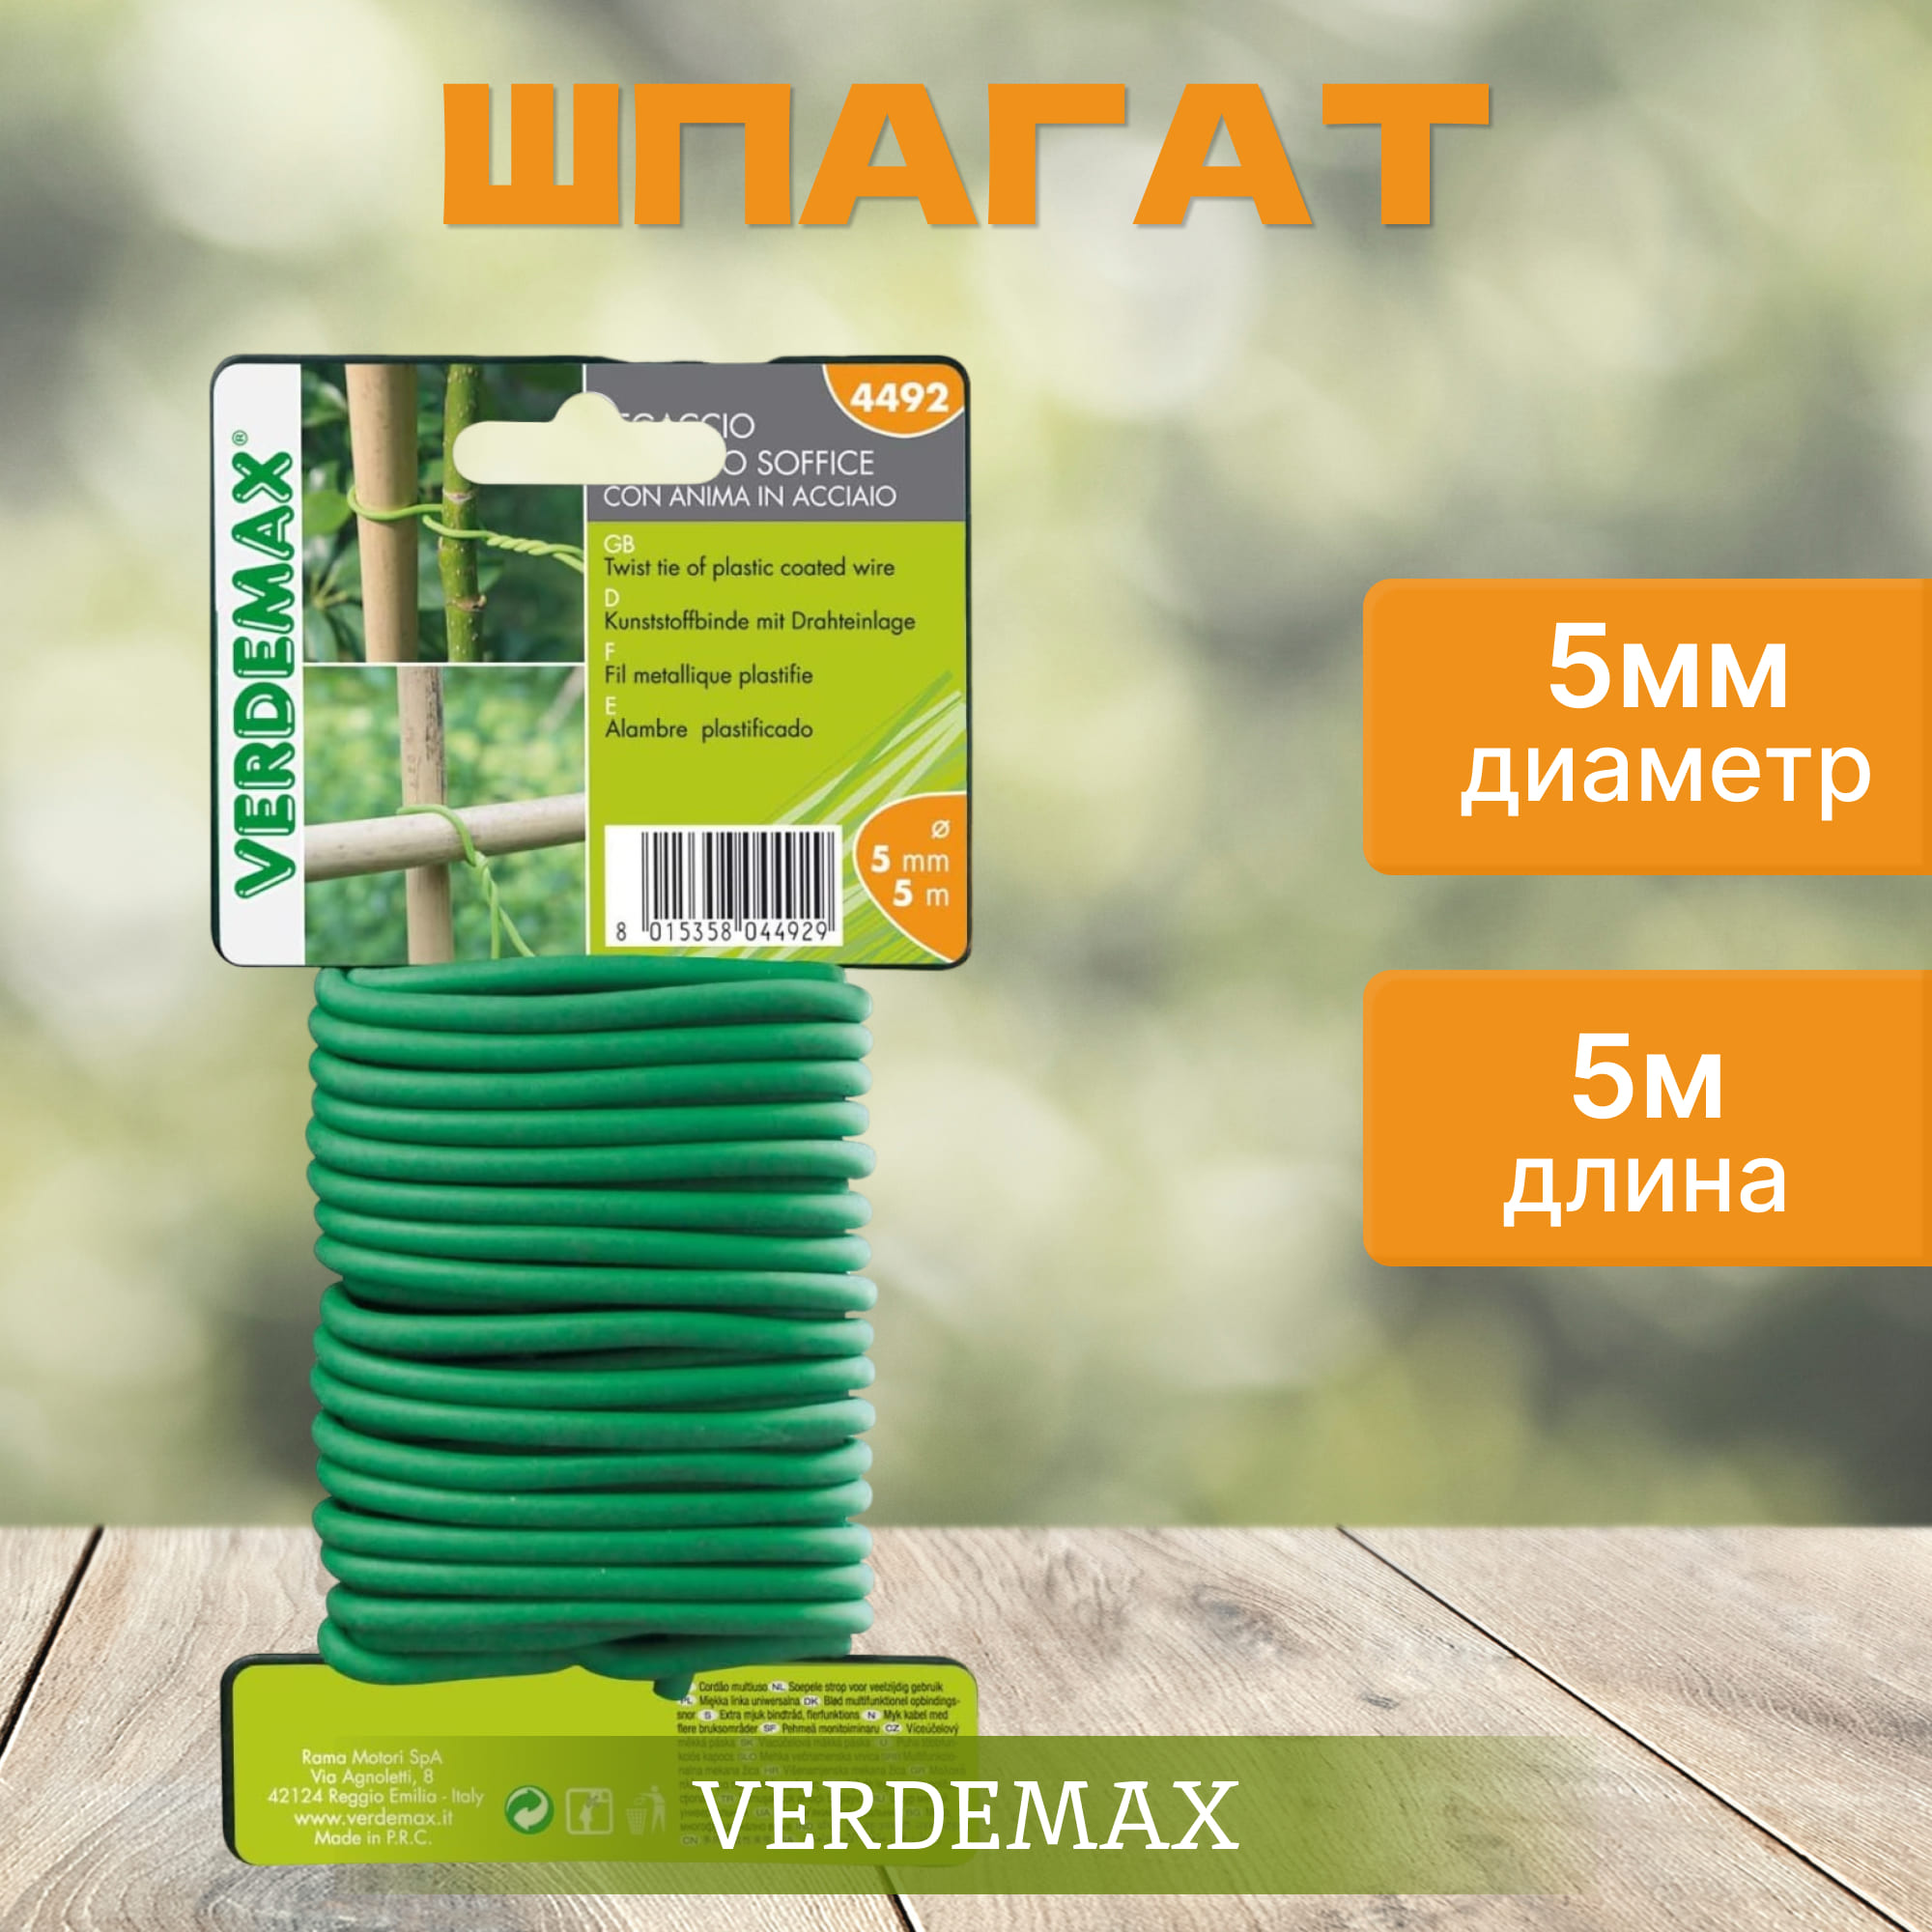 Шпагат Verdemax диаметр 5мм, цвет зелёный - фото 2